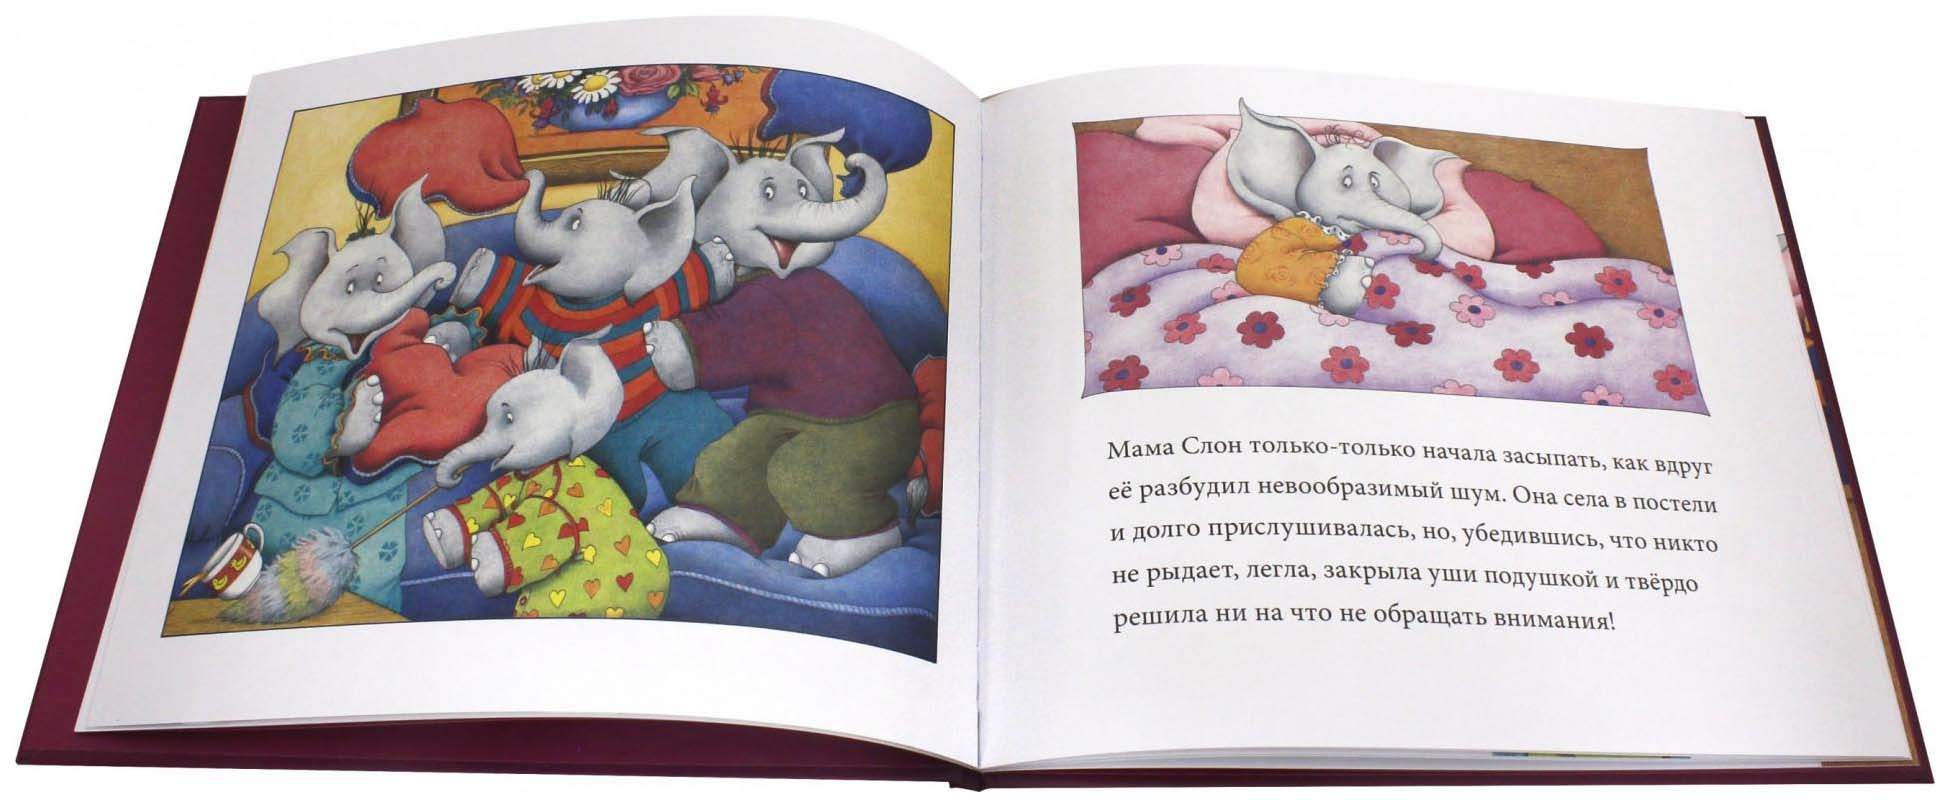 Папа слон - за главного. Книга про маму и слоненка. Папа-слон и гусенок.